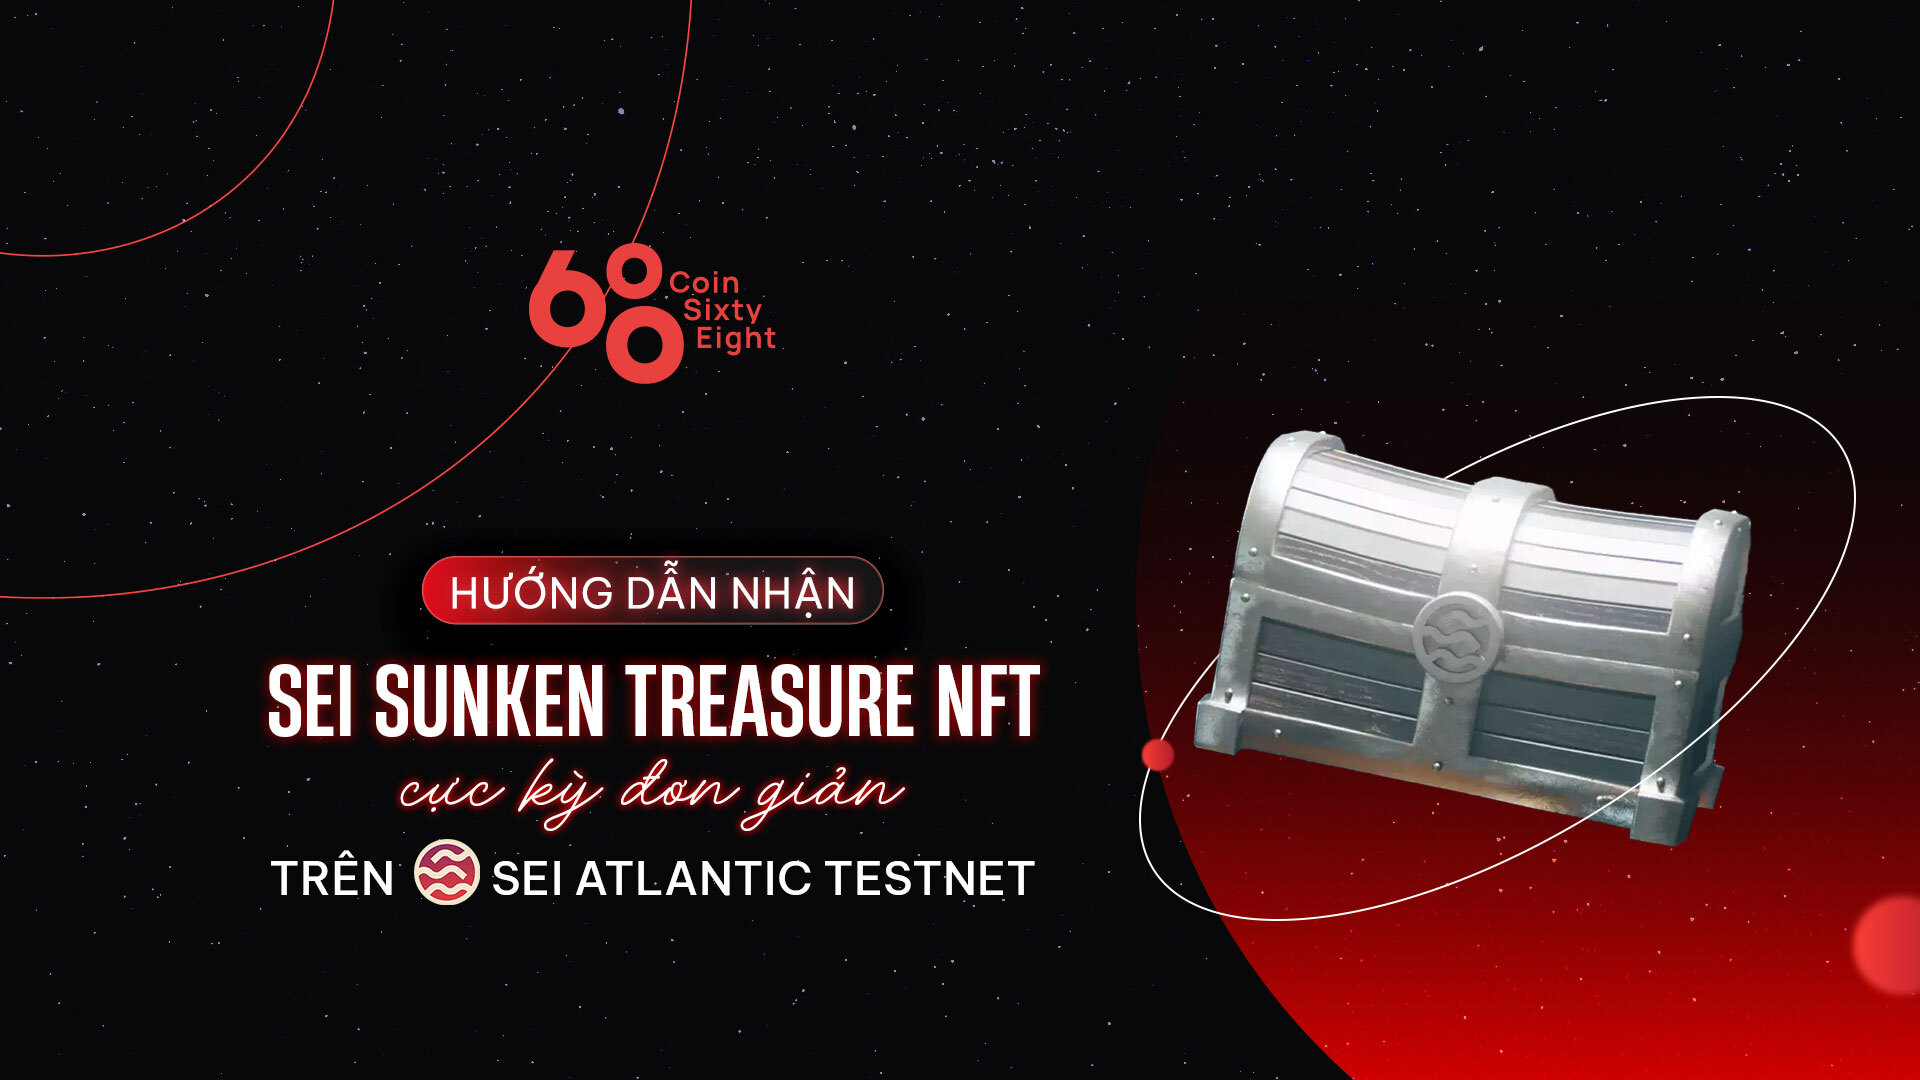 Hướng Dẫn Nhận Sei Sunken Treasure Nft Trên Sei Atlantic Testnet